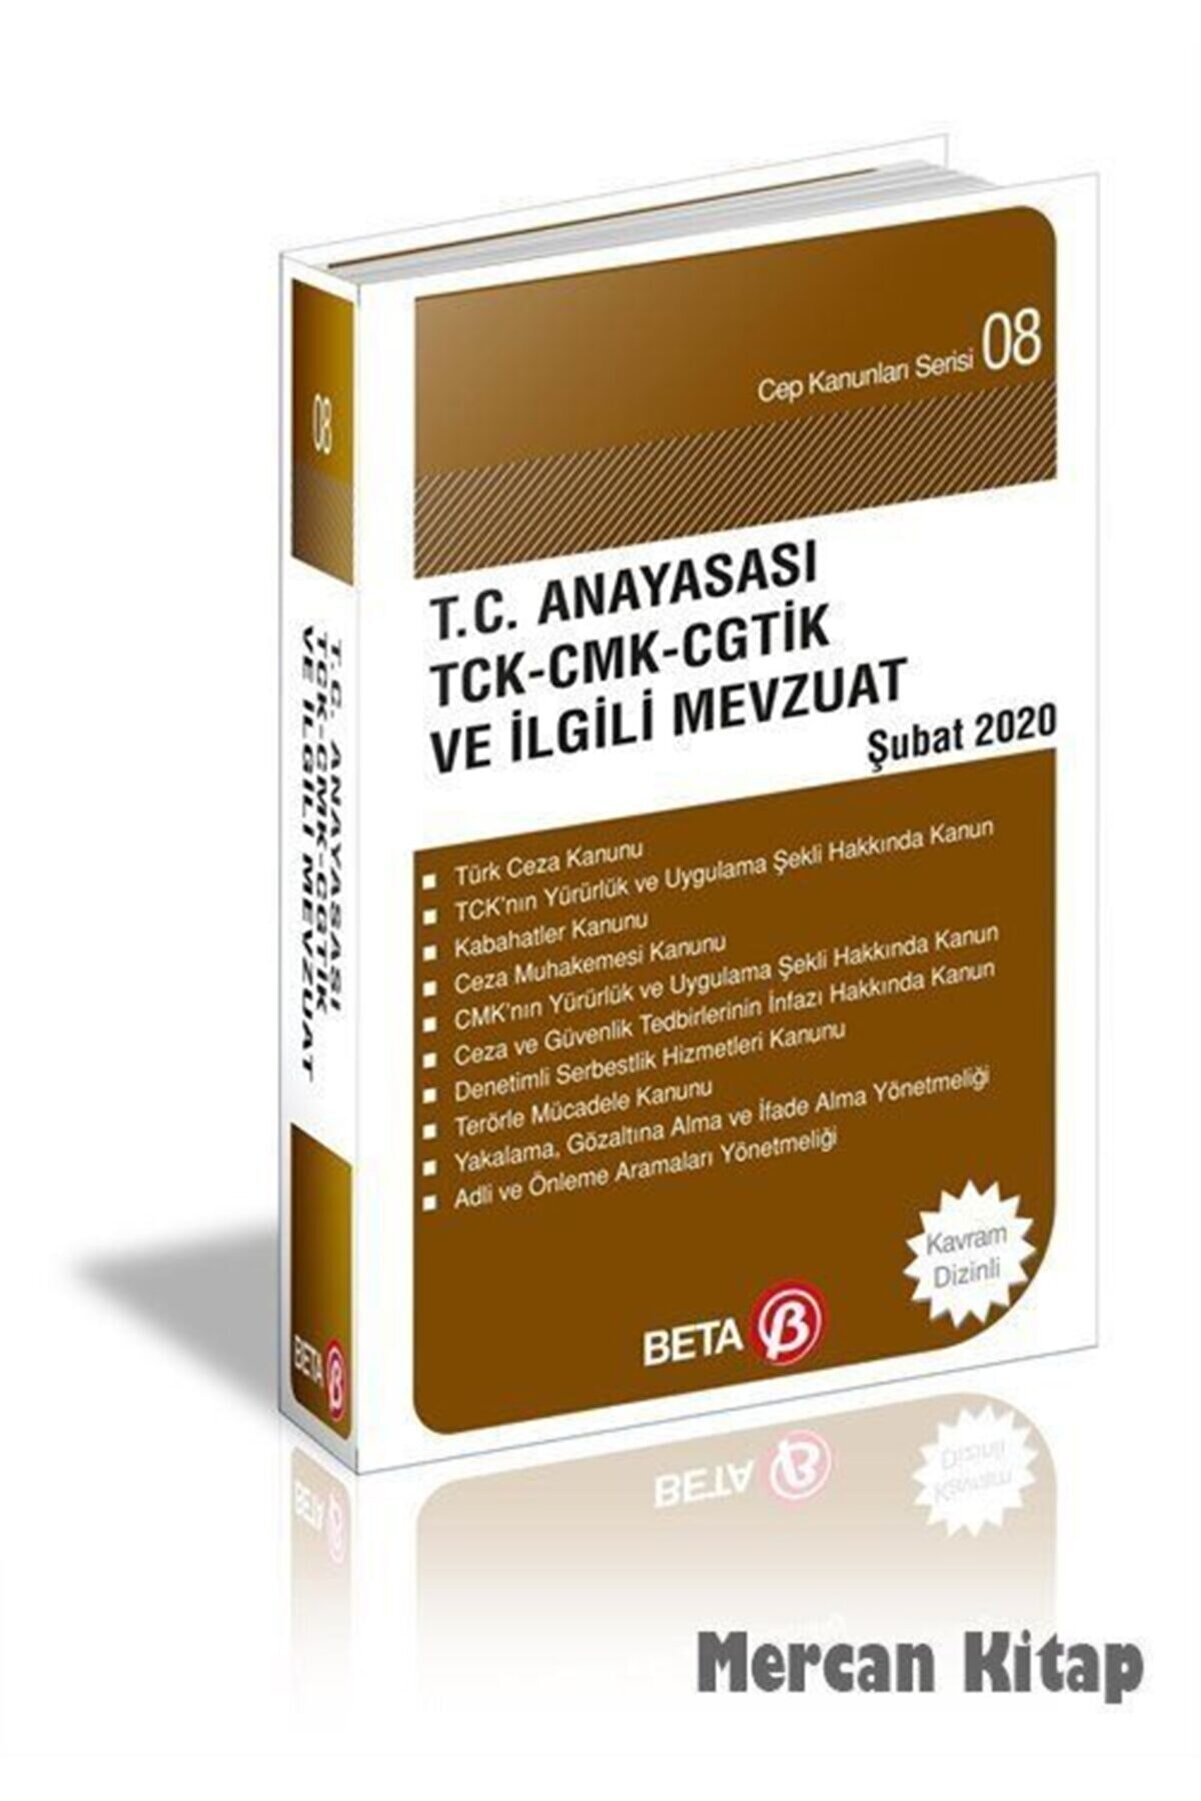 Beta Yayınları T.c. Anayasası Tck-cmk-cgtik-pvsk Ve Ilgili Mevzuat / Cep Kanunları Serisi 08